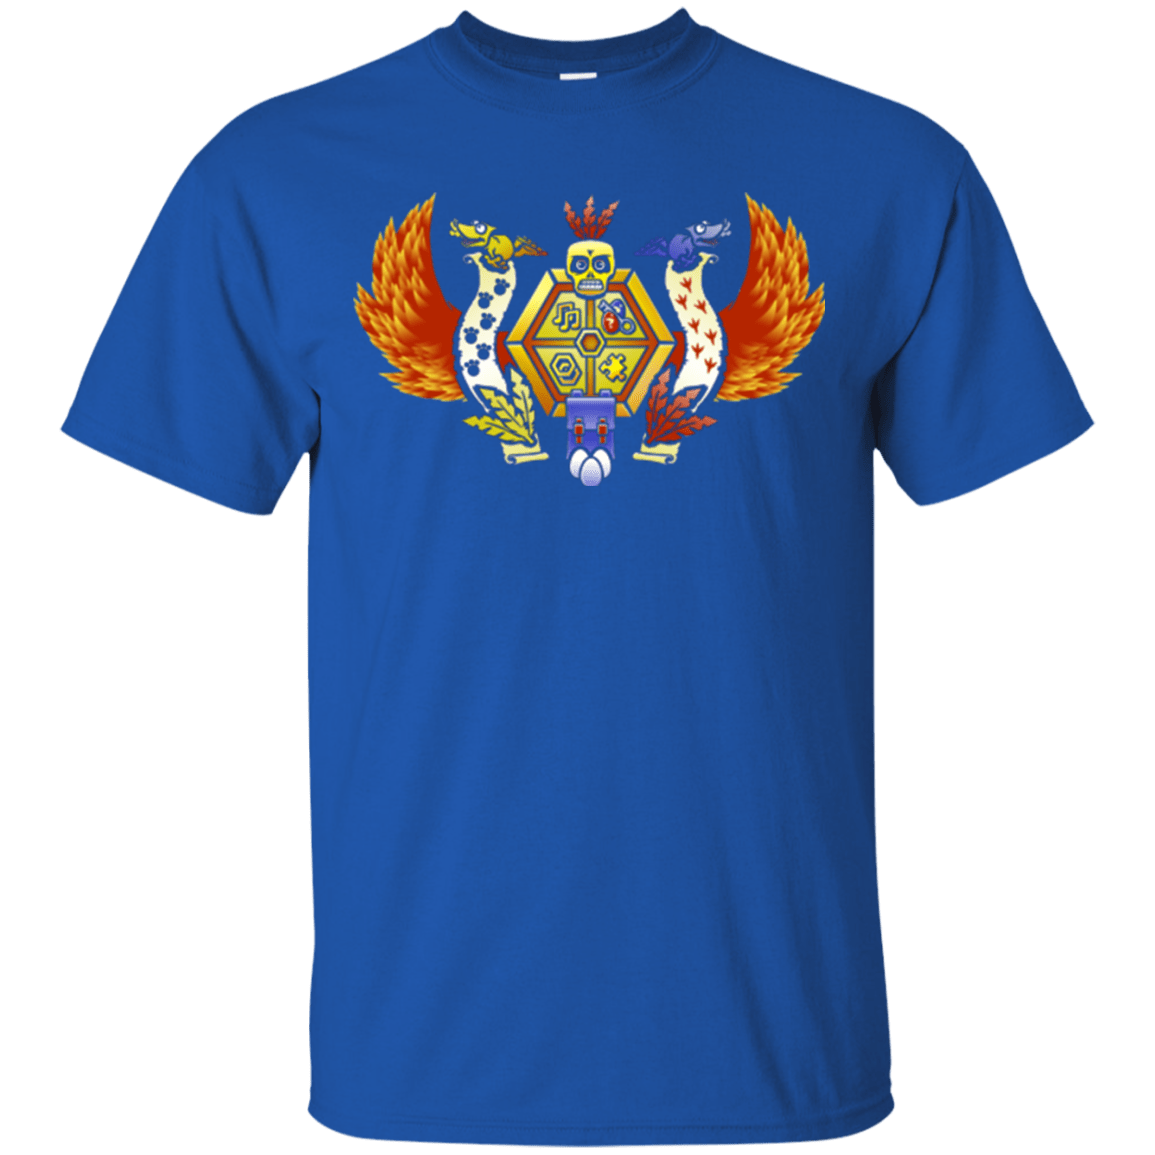 T-Shirts Royal / Small Treasure Hunters Crest T-Shirt